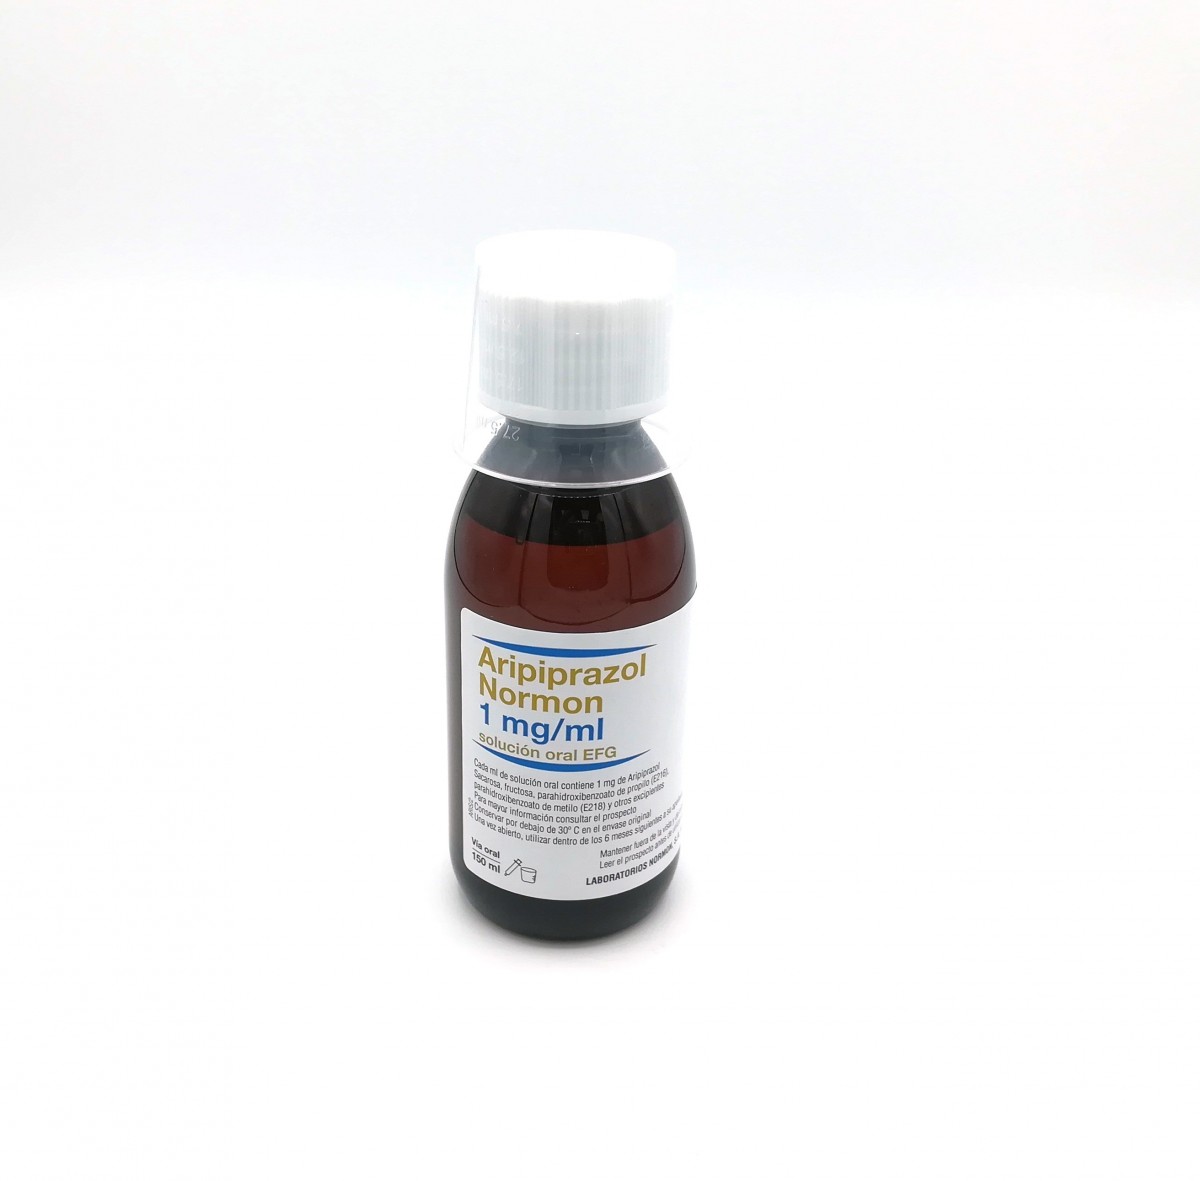 ARIPIPRAZOL NORMON 1 MG/ML SOLUCION ORAL EFG , 150 ml fotografía de la forma farmacéutica.